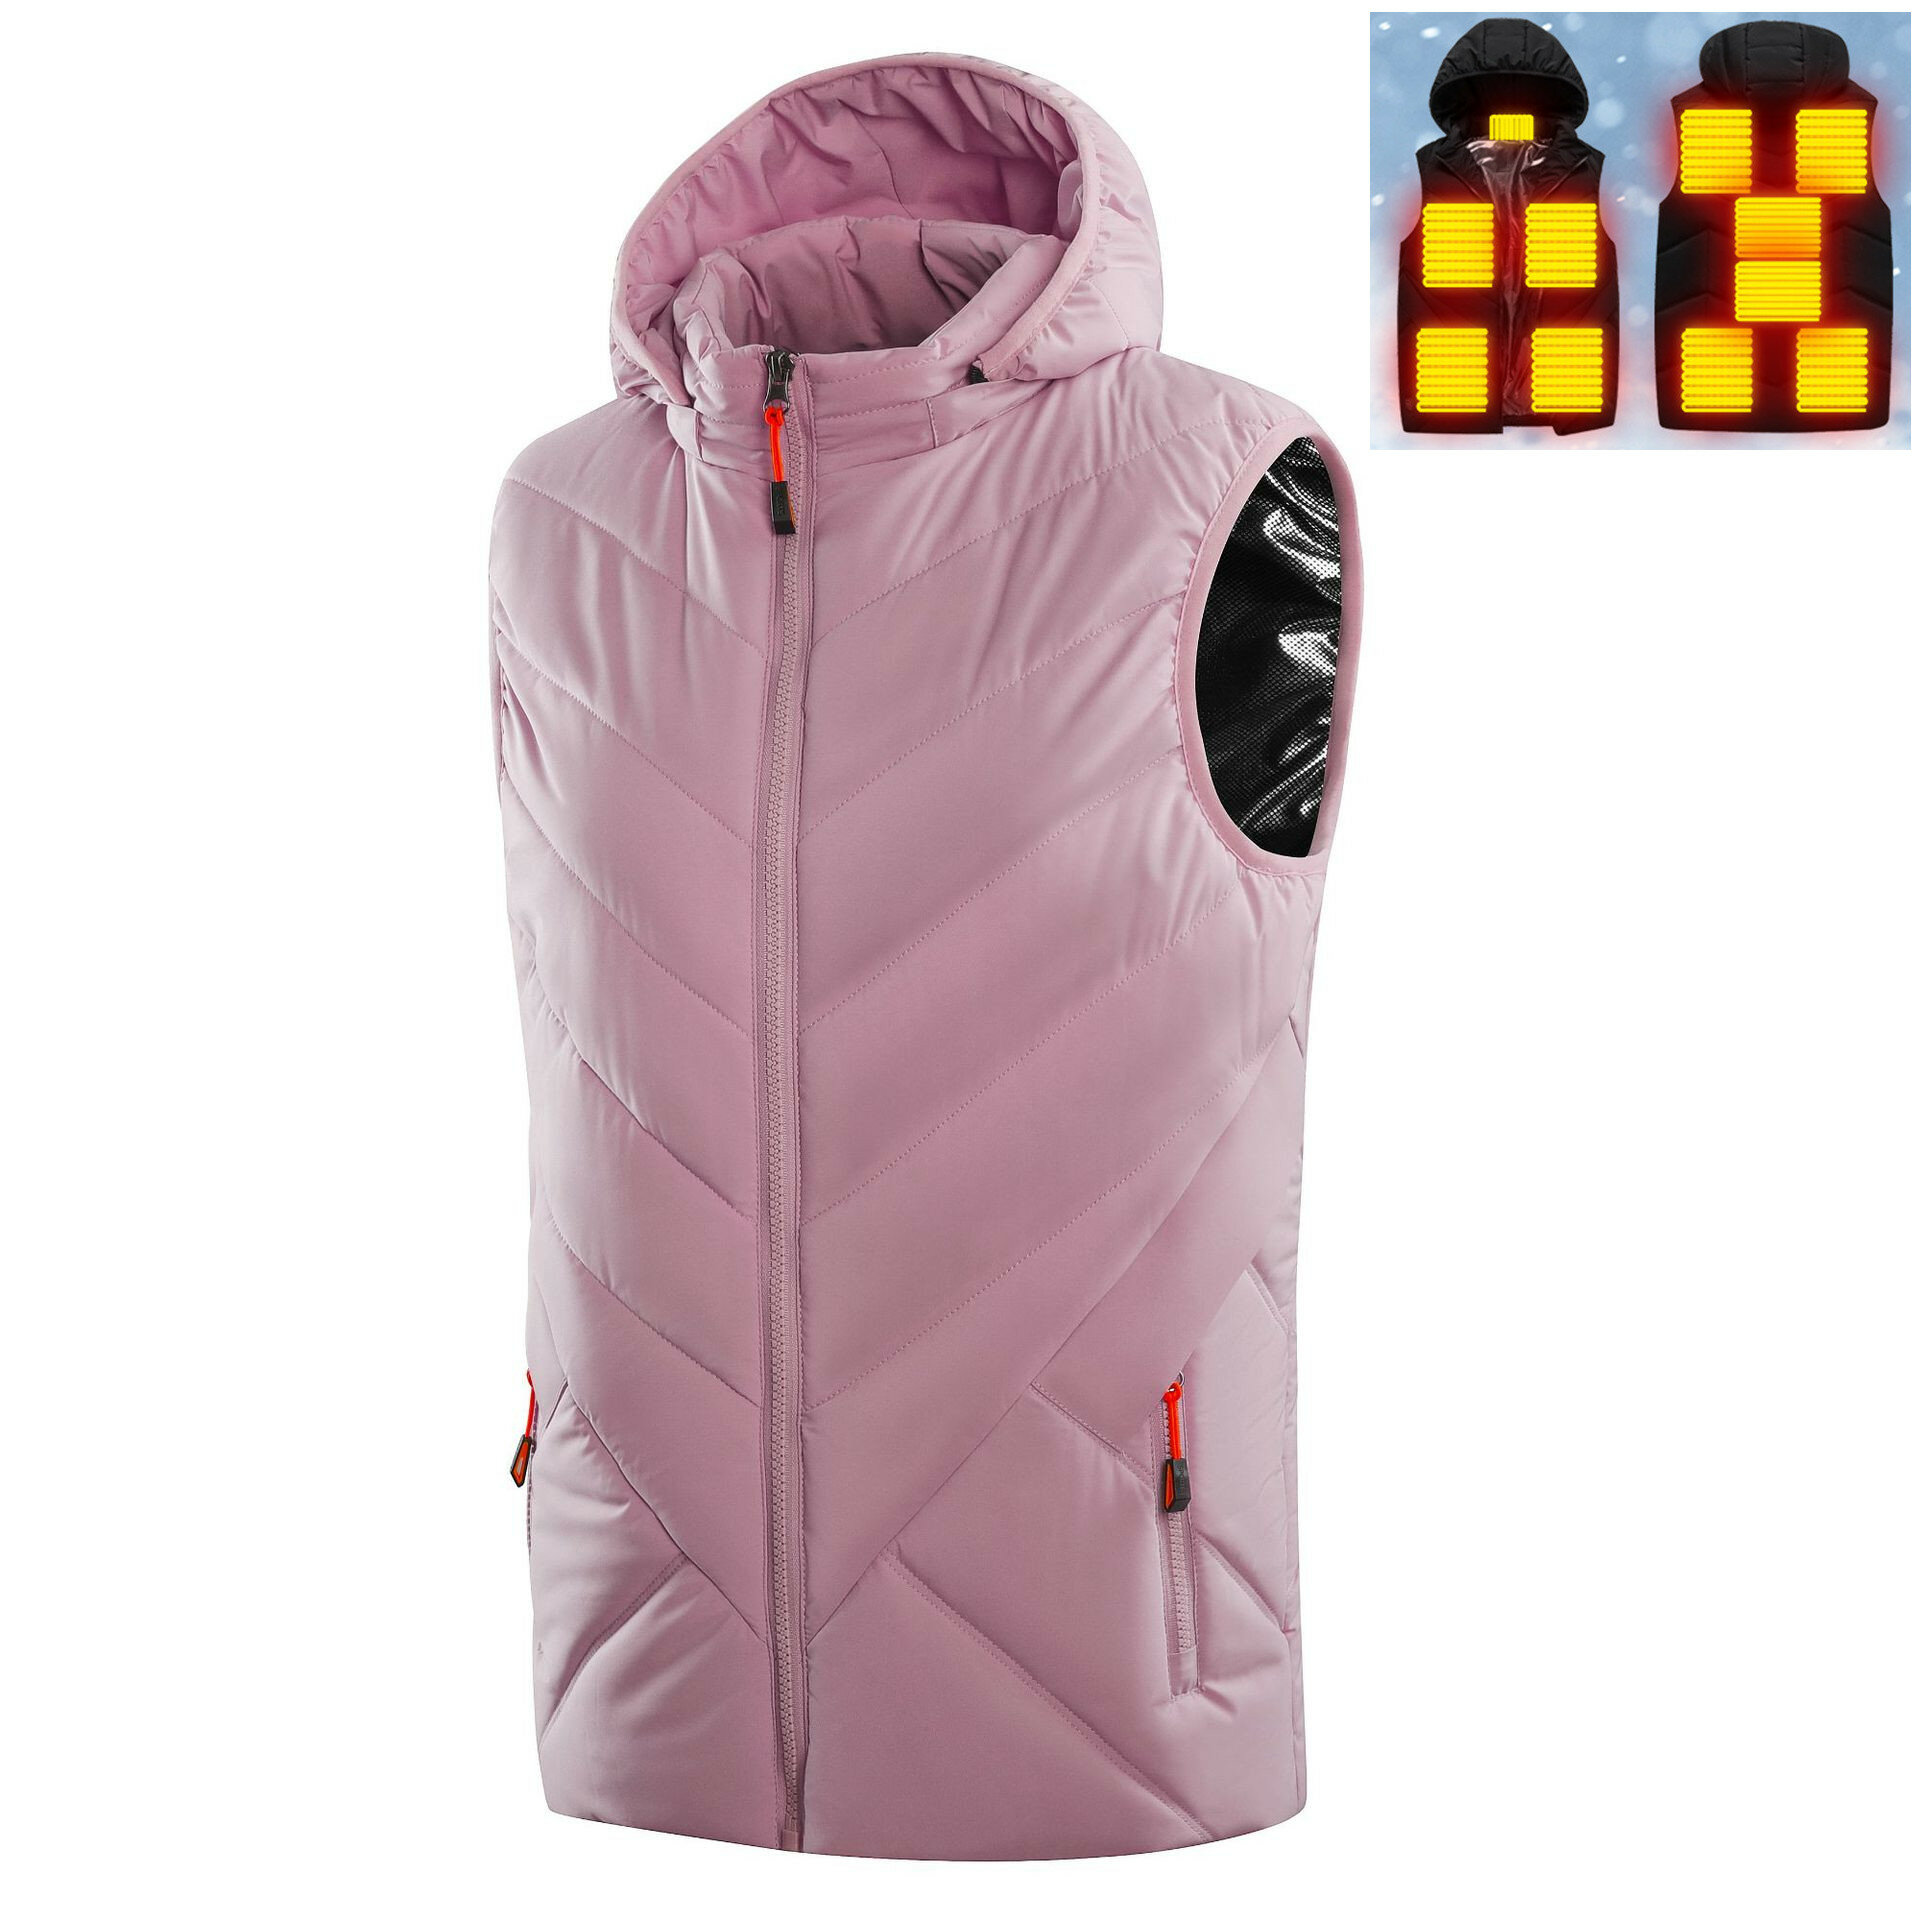 Gilet riscaldato per donne con 11 zone di riscaldamento, giacca senza maniche in cotone lavabile con cappello e riscaldamento USB per esterni, abbigliamento rosa